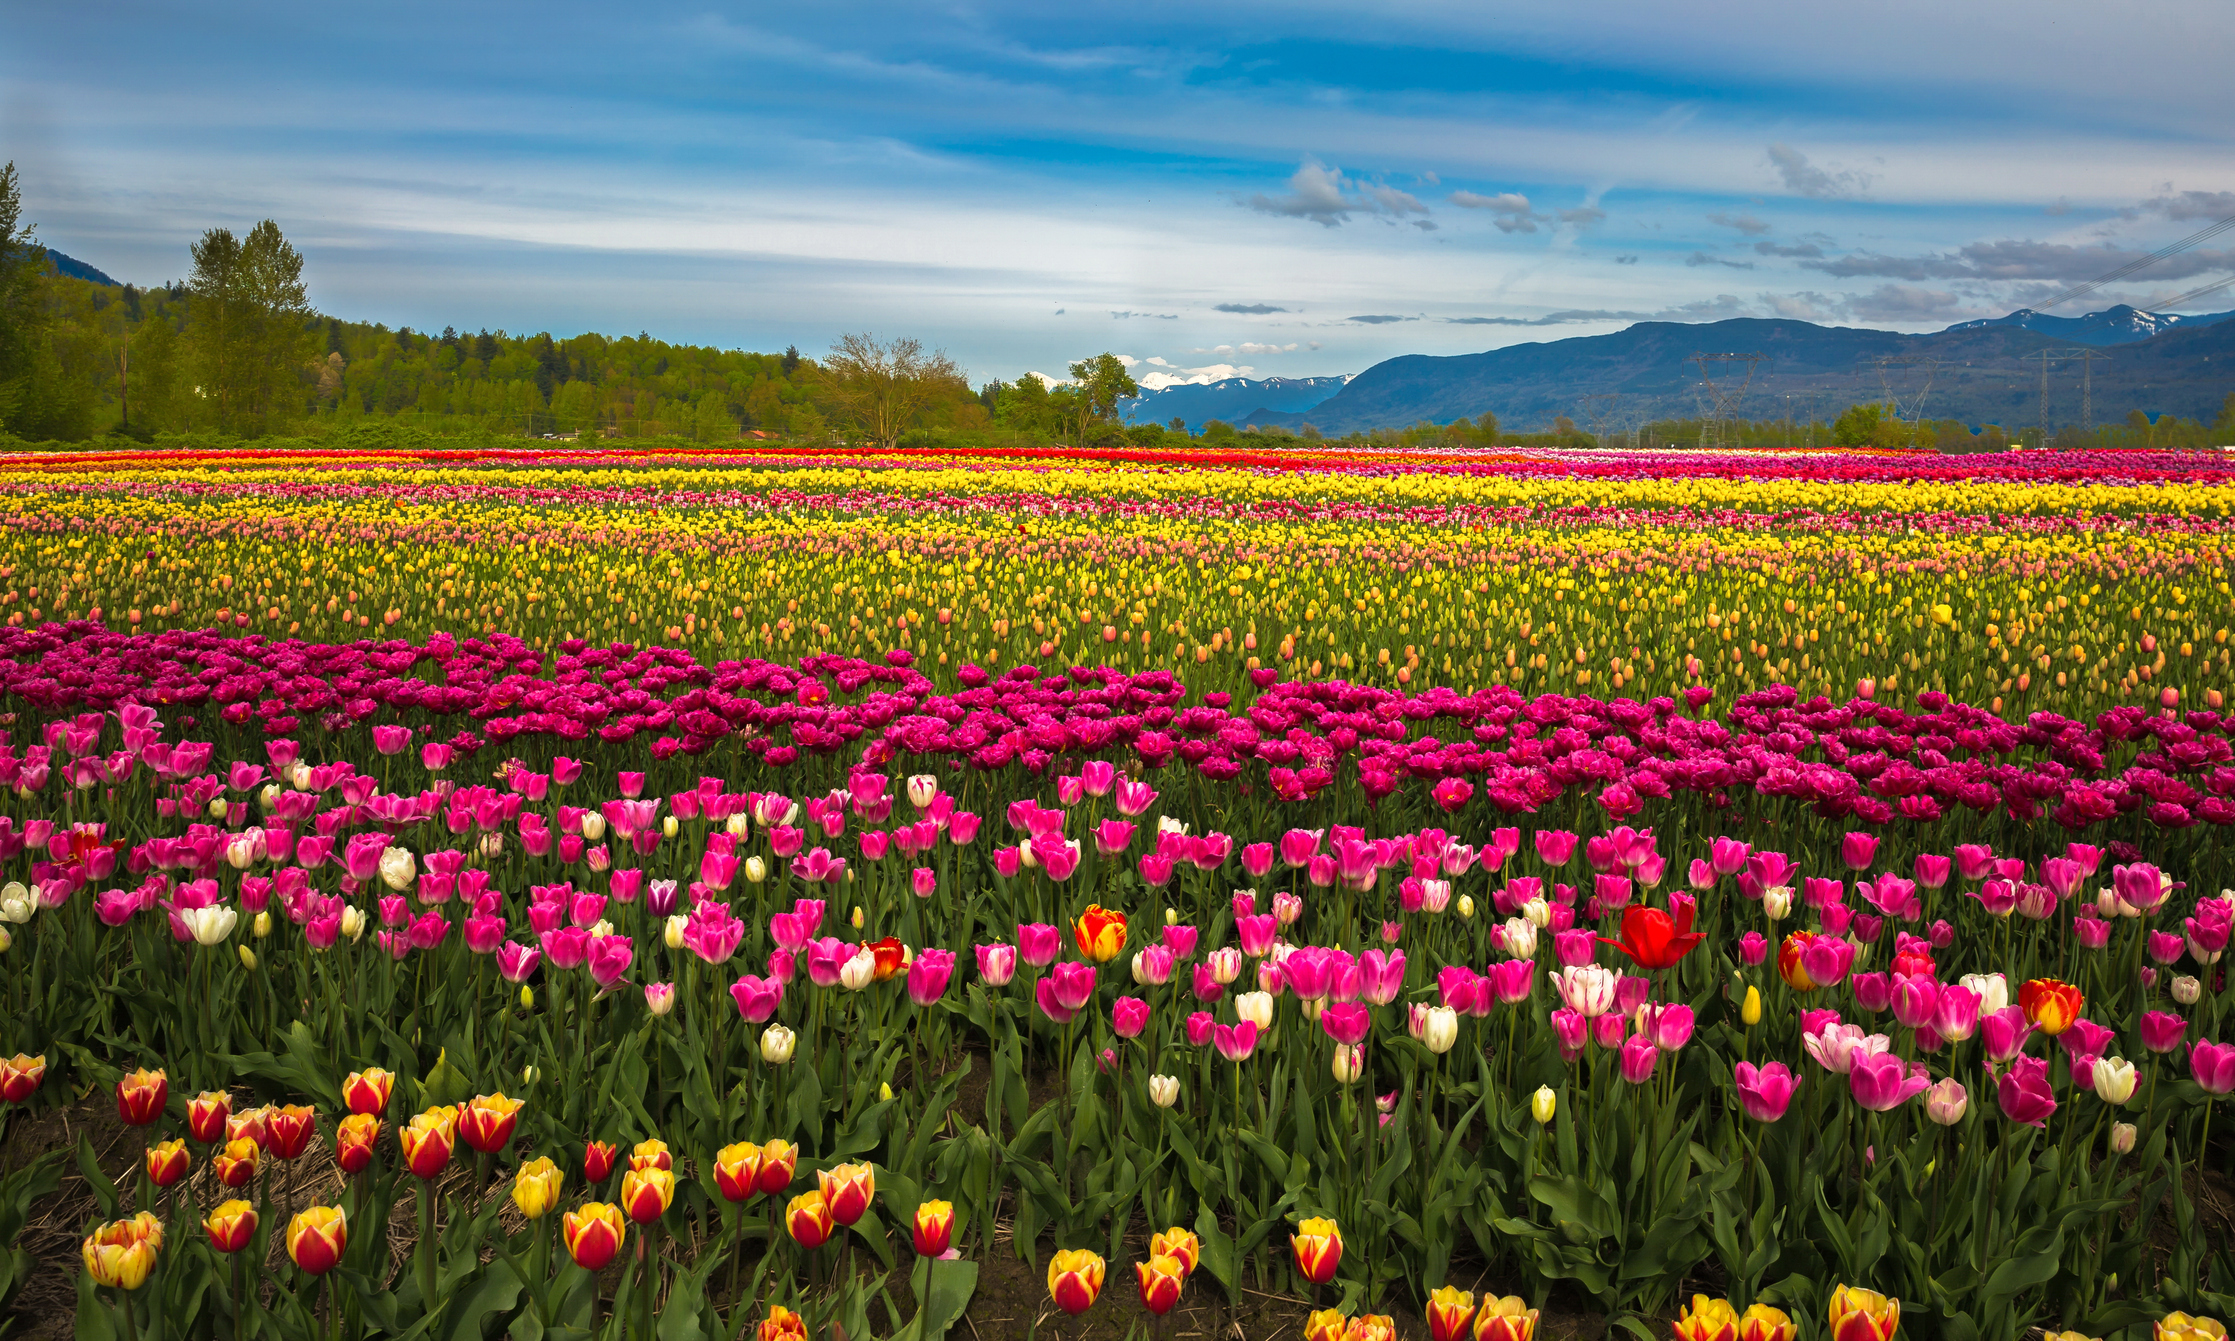 Tulip festival - field of flowers